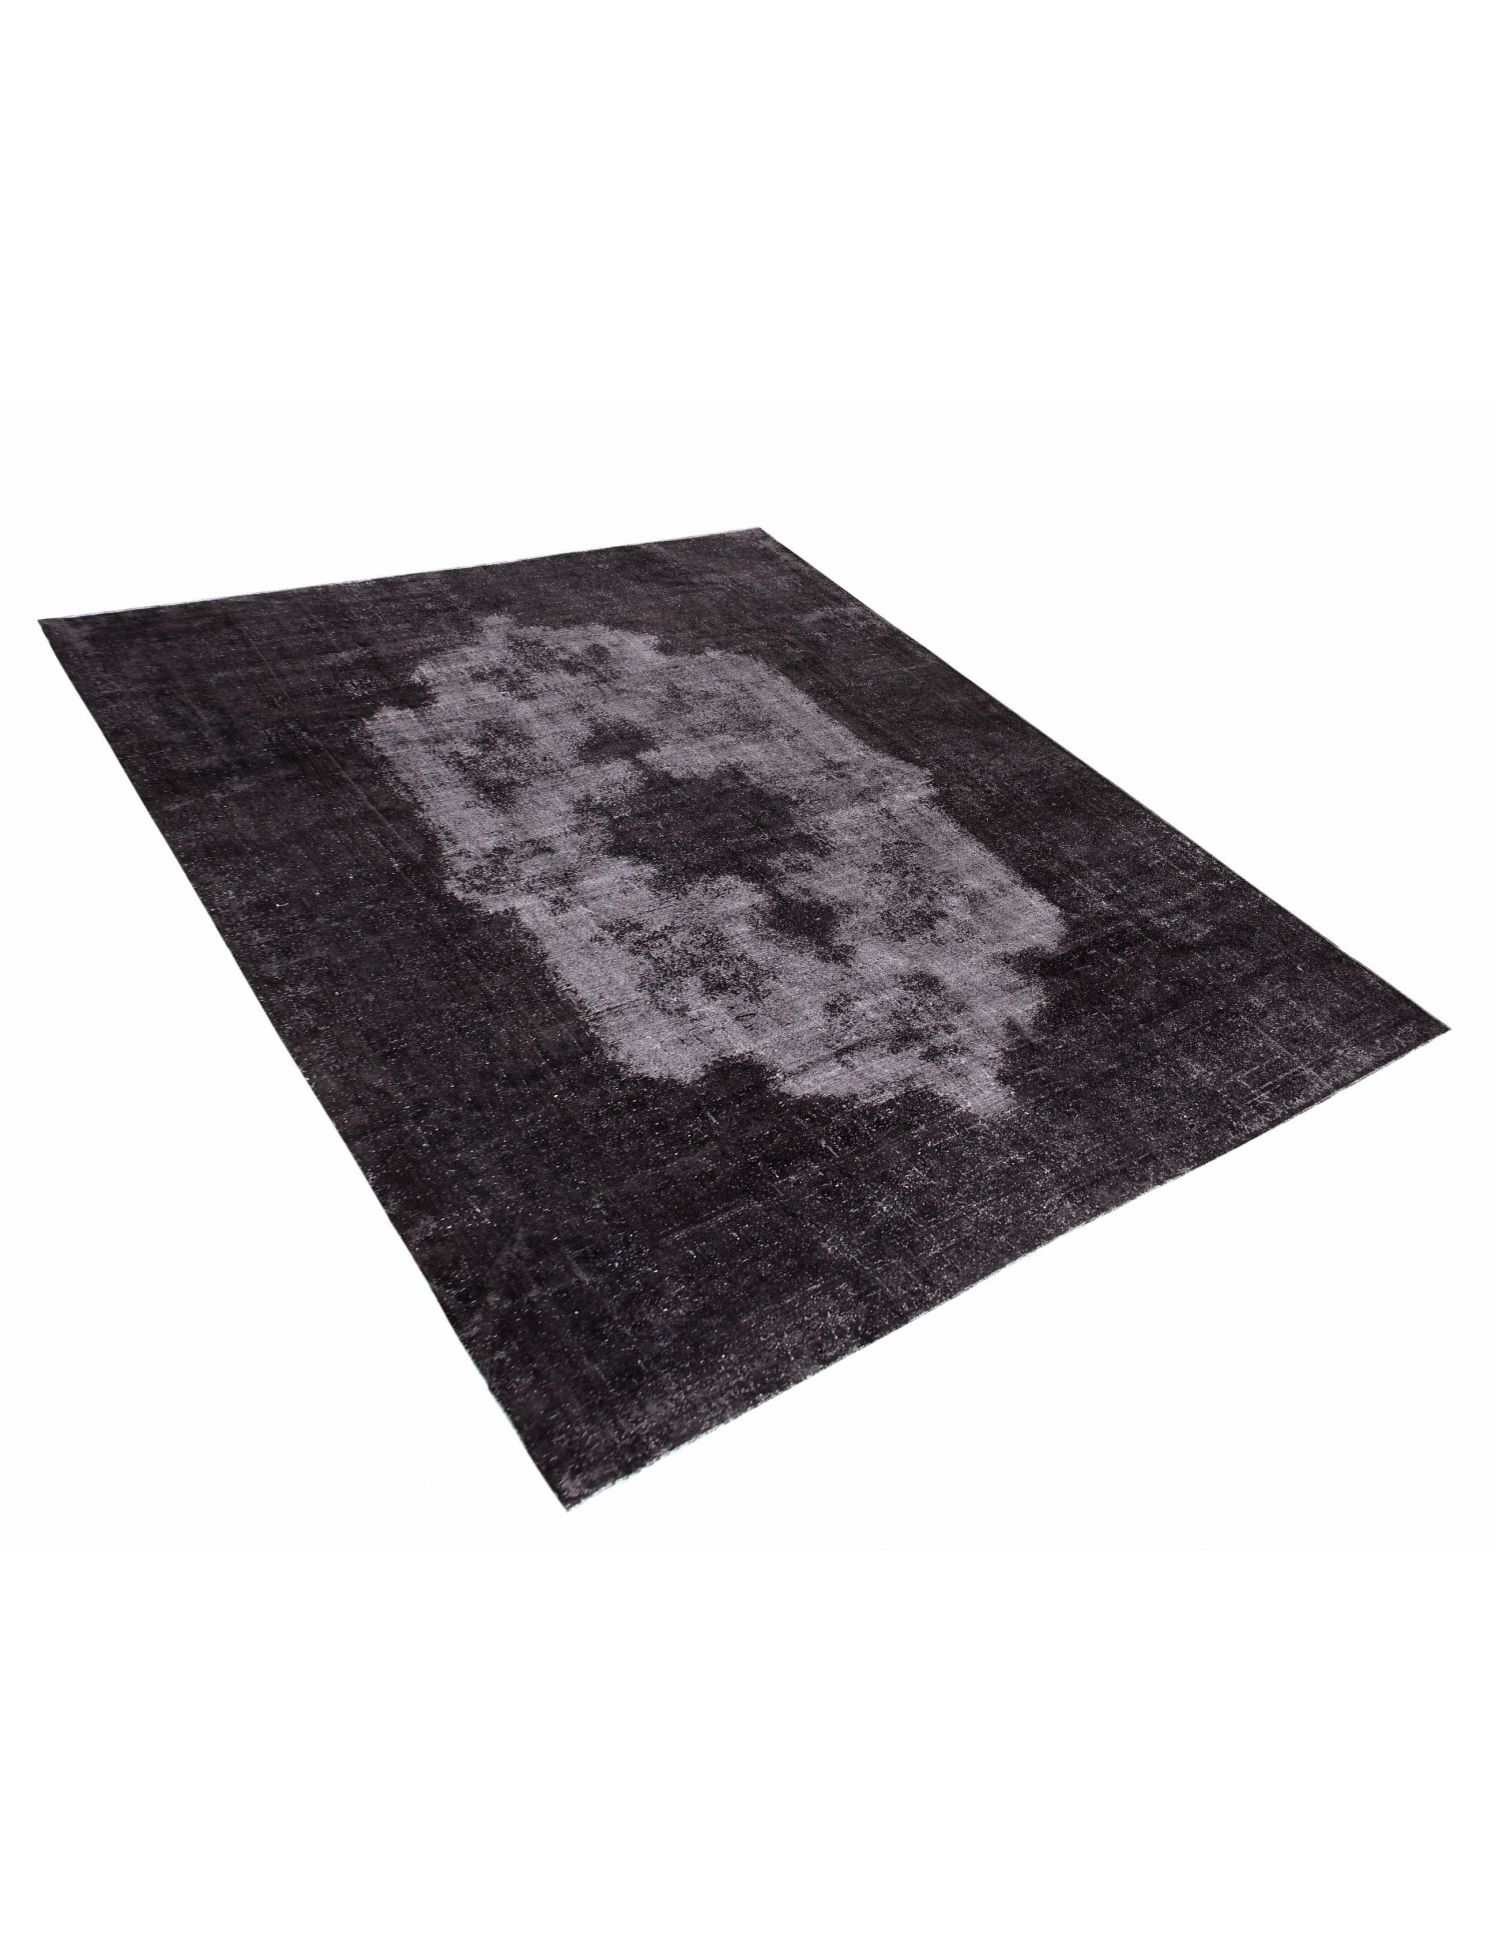 Persian Vintage Carpet  black <br/>540 x 340 cm